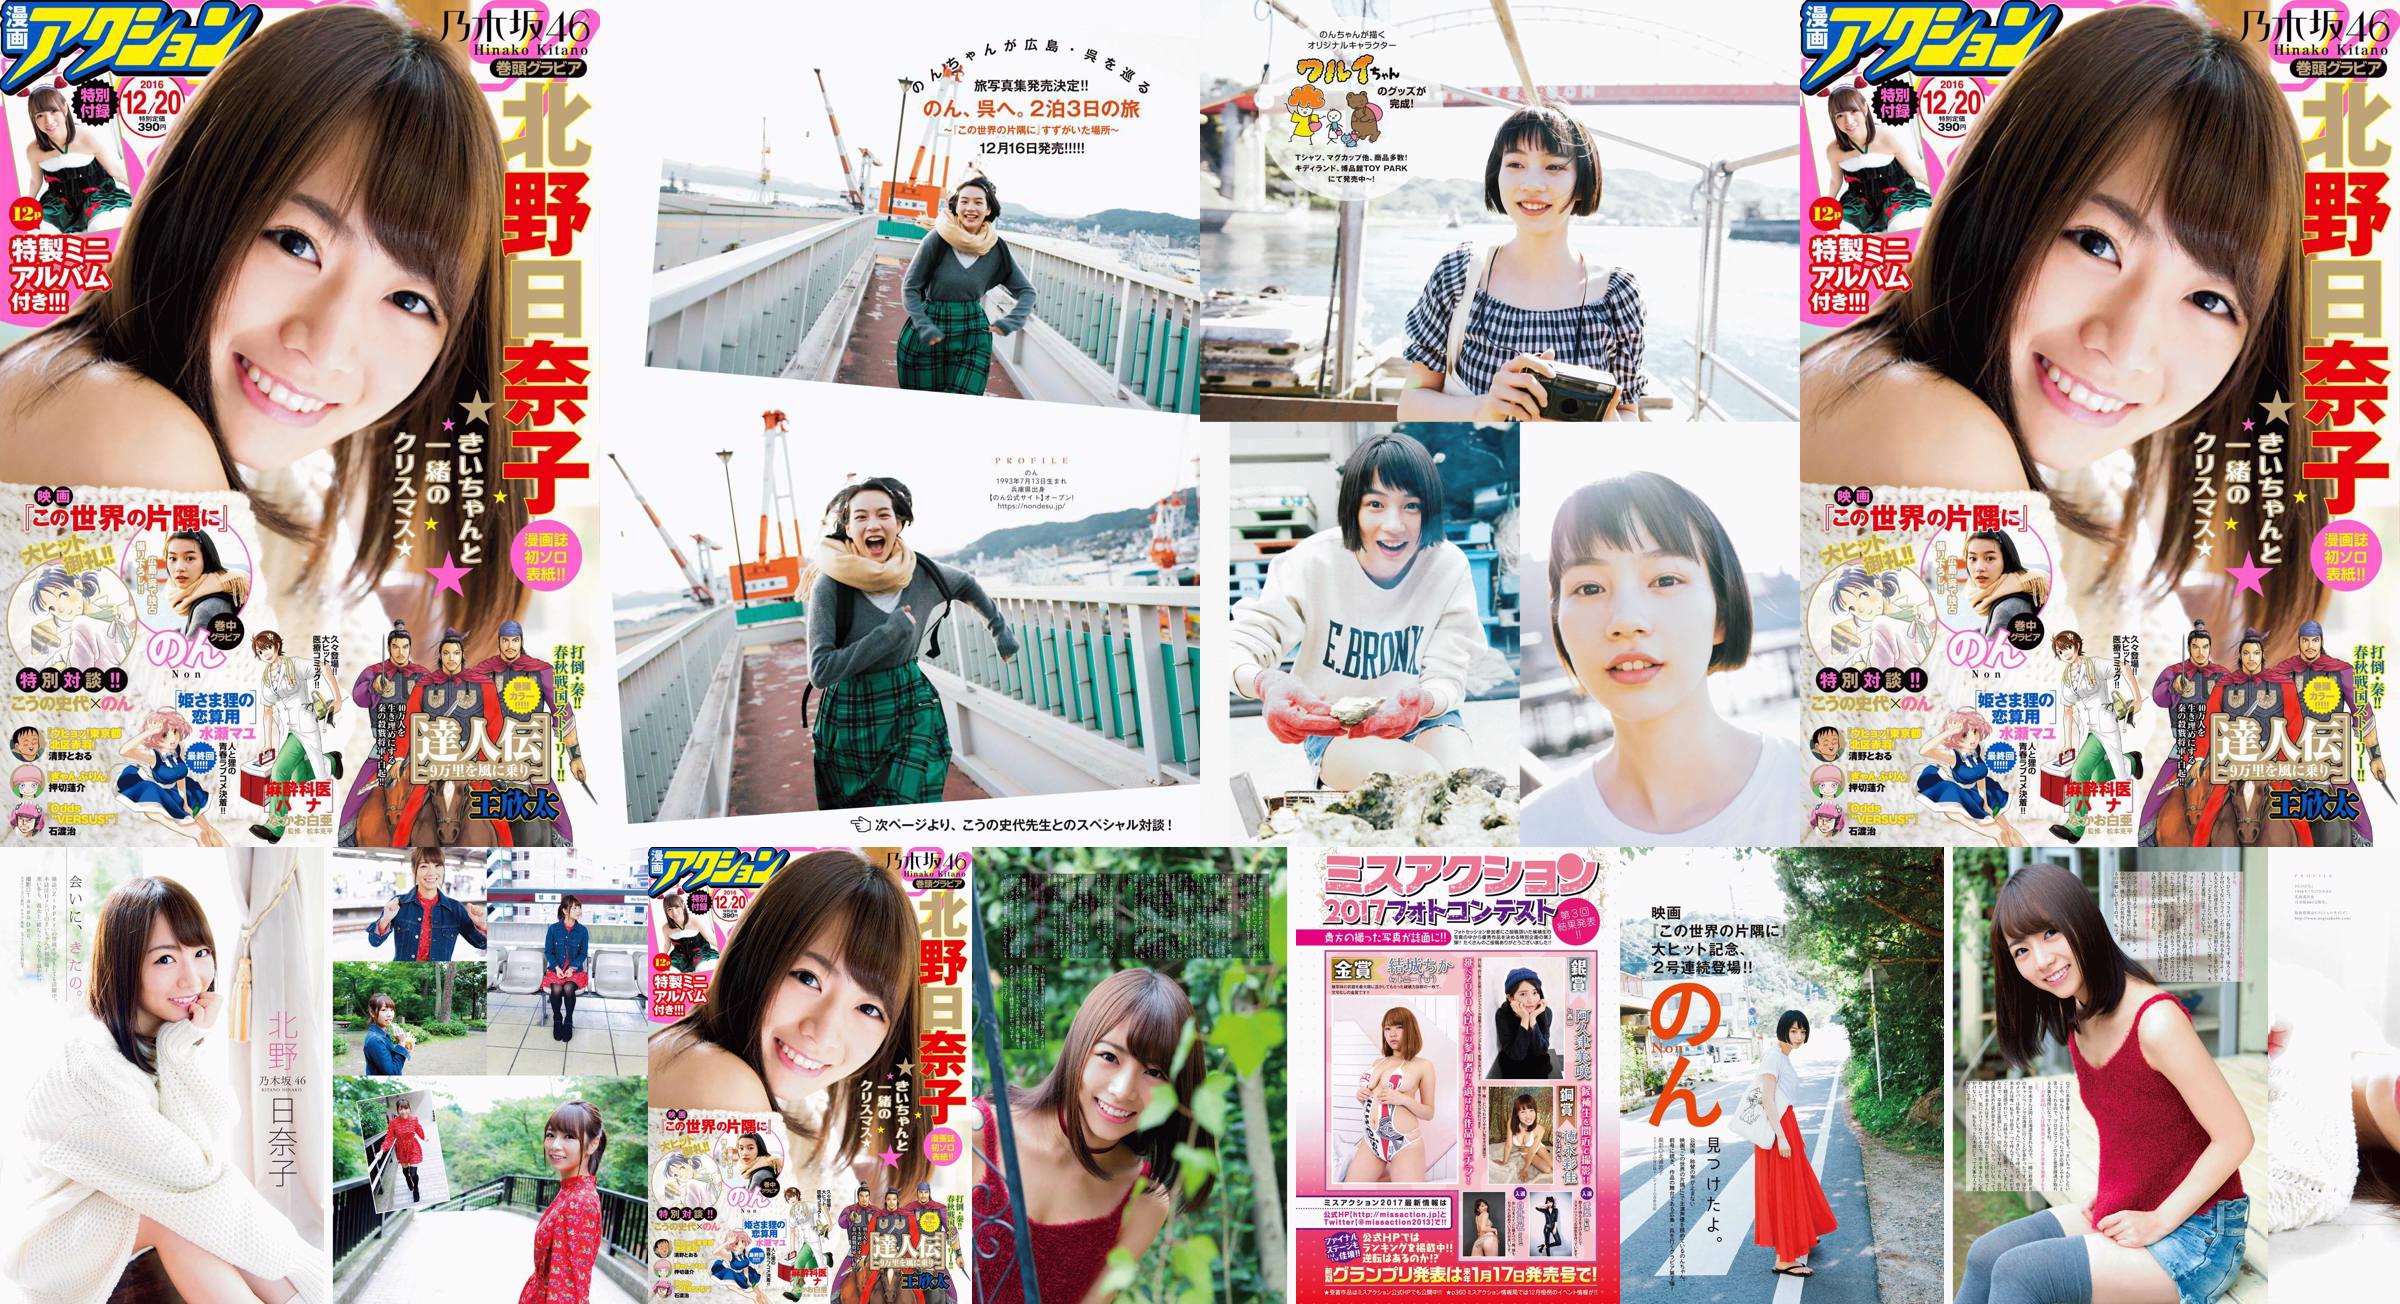 [Manga Action] Kitano Hinako のん 2016 No.24 Photo Magazine No.0069e5 Pagina 1